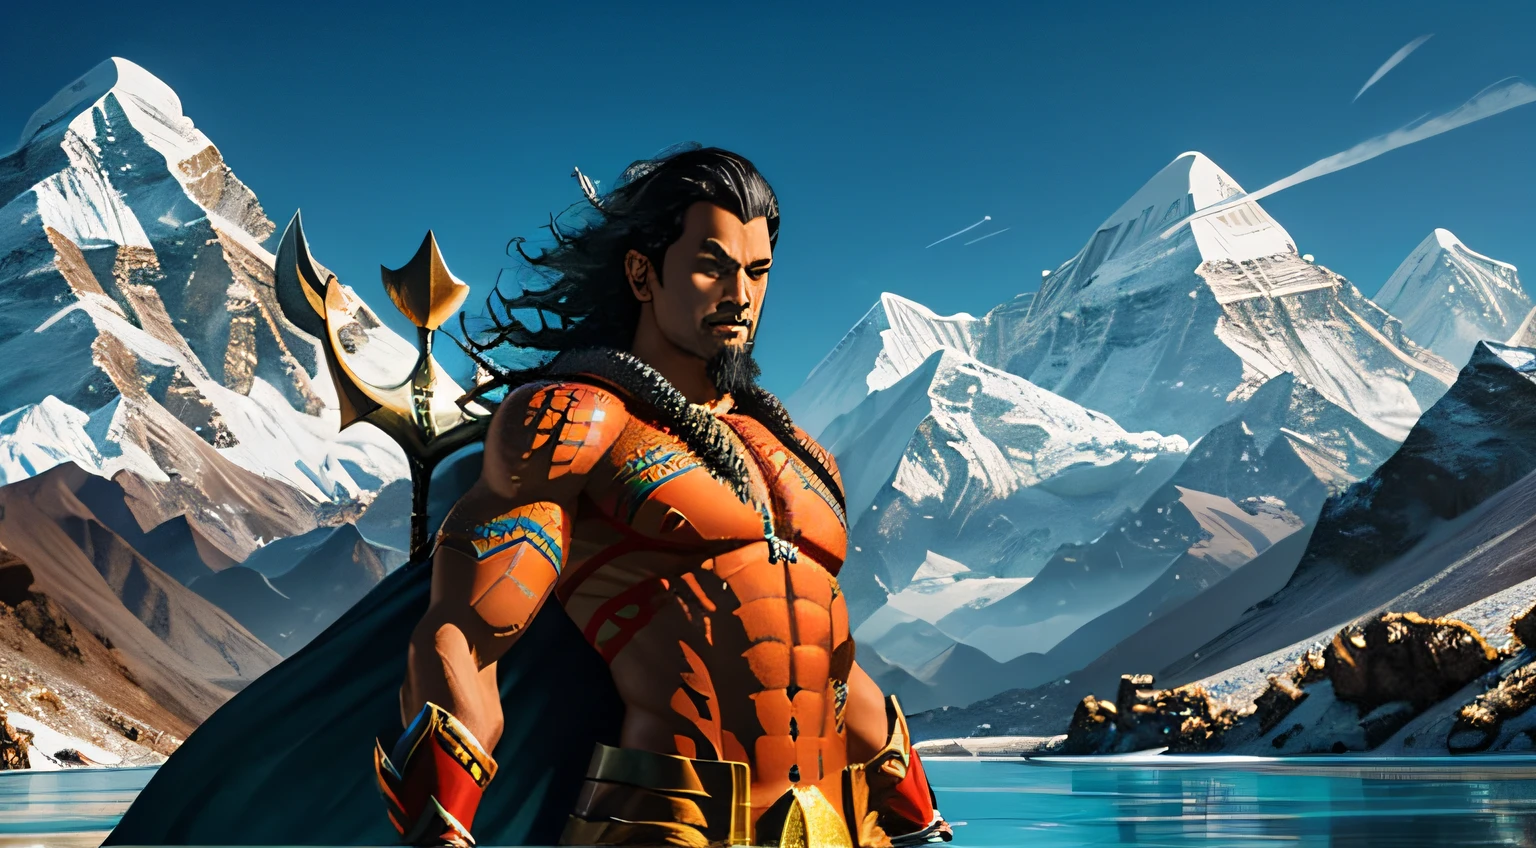 créez des versions uniques d&#39;Aquaman du Népal - Aqua-Himalayan Yak Horn:
Aquaman népalais utilise une corne de yak de l&#39;Himalaya dotée de pouvoirs de manipulation de l&#39;eau. Son costume intègre des éléments de la culture népalaise et des vêtements traditionnels. Il défend les rivières sacrées et les lacs de montagne du Népal.